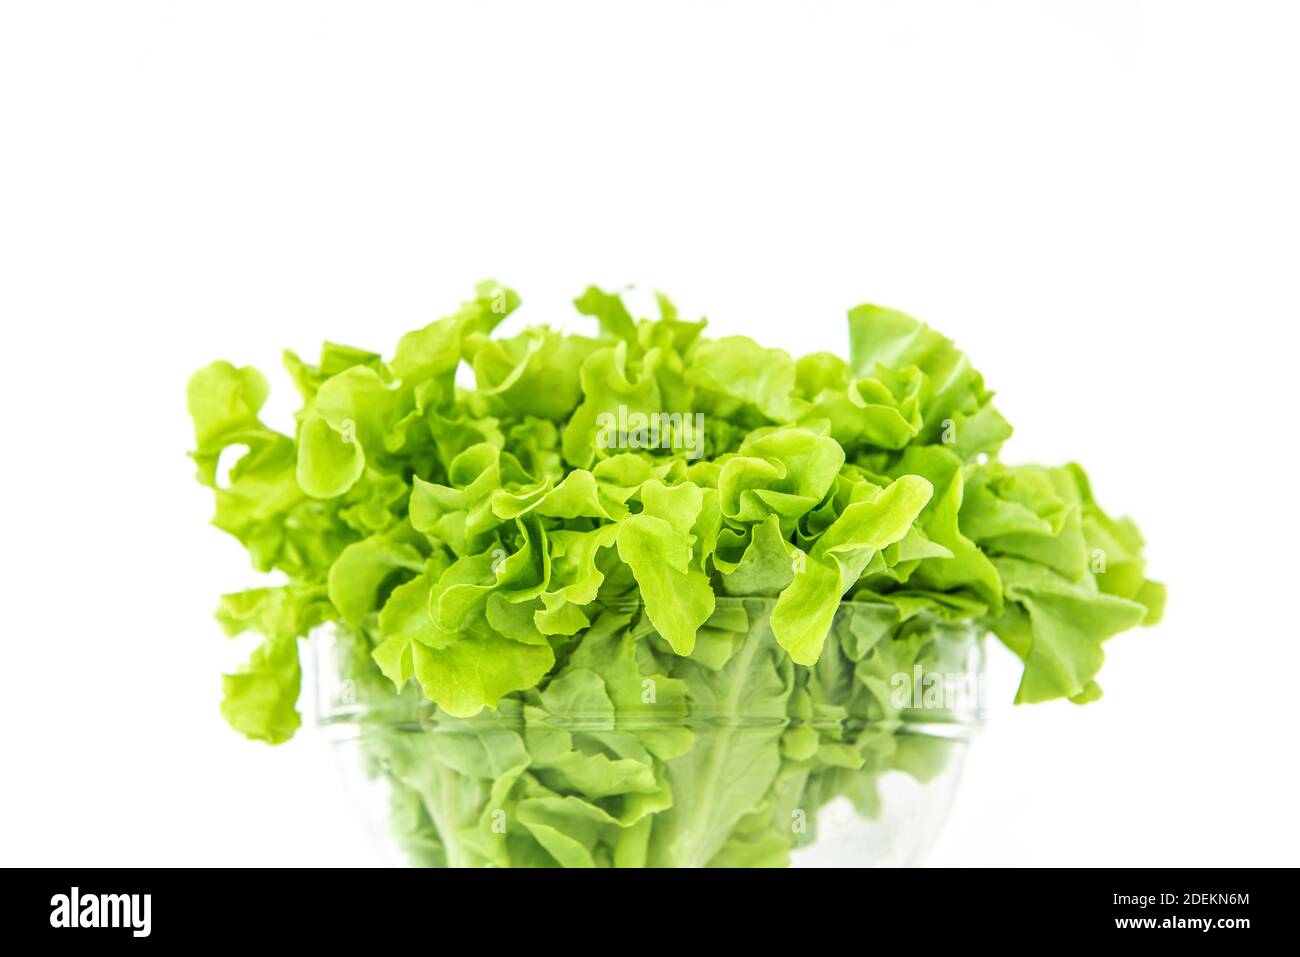 Frisches Bio gesunde grüne Eiche Salat Gemüse in einer Glasschüssel auf weißem Hintergrund, bereit, als Salat oder kochen zu essen Stockfoto